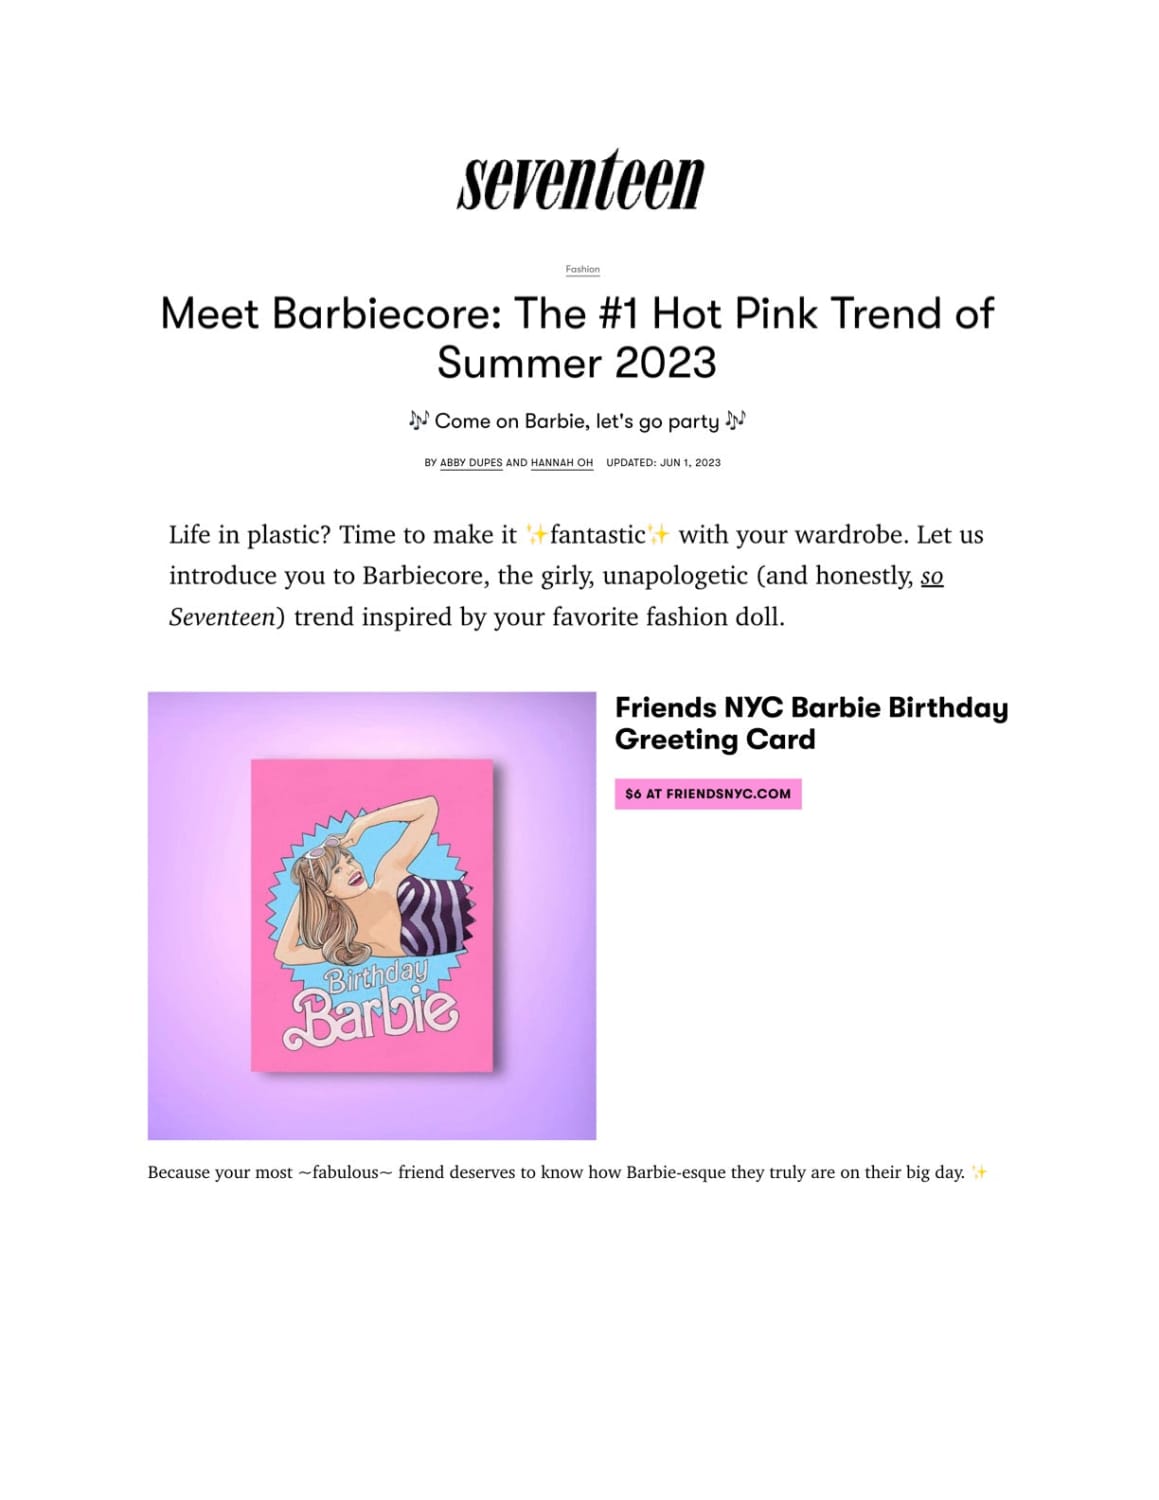 Barbiecore trend in seventeen